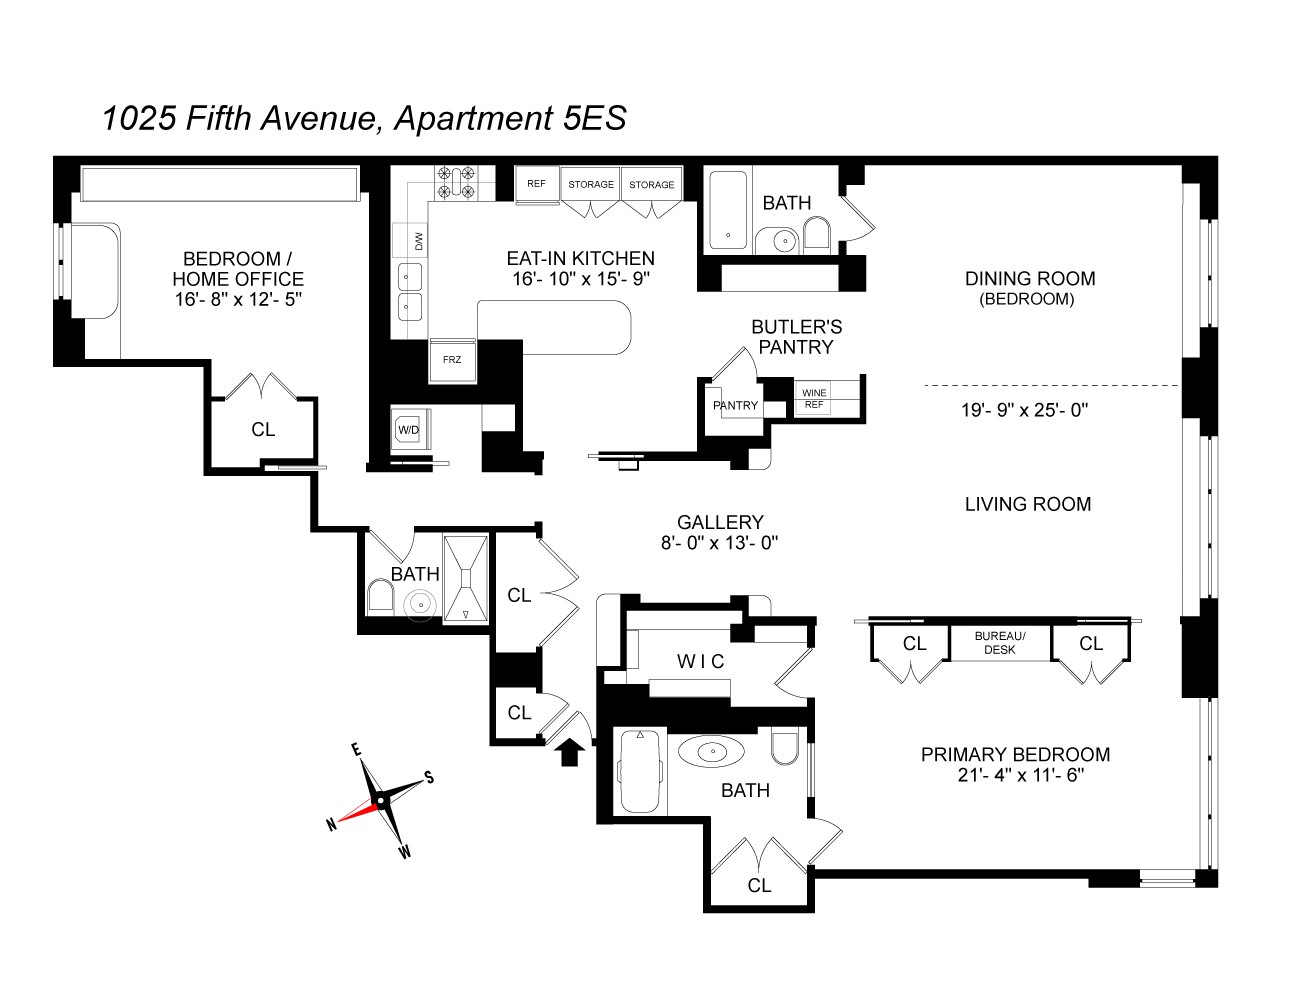 Floorplan for 1025 5th Avenue, 5ES